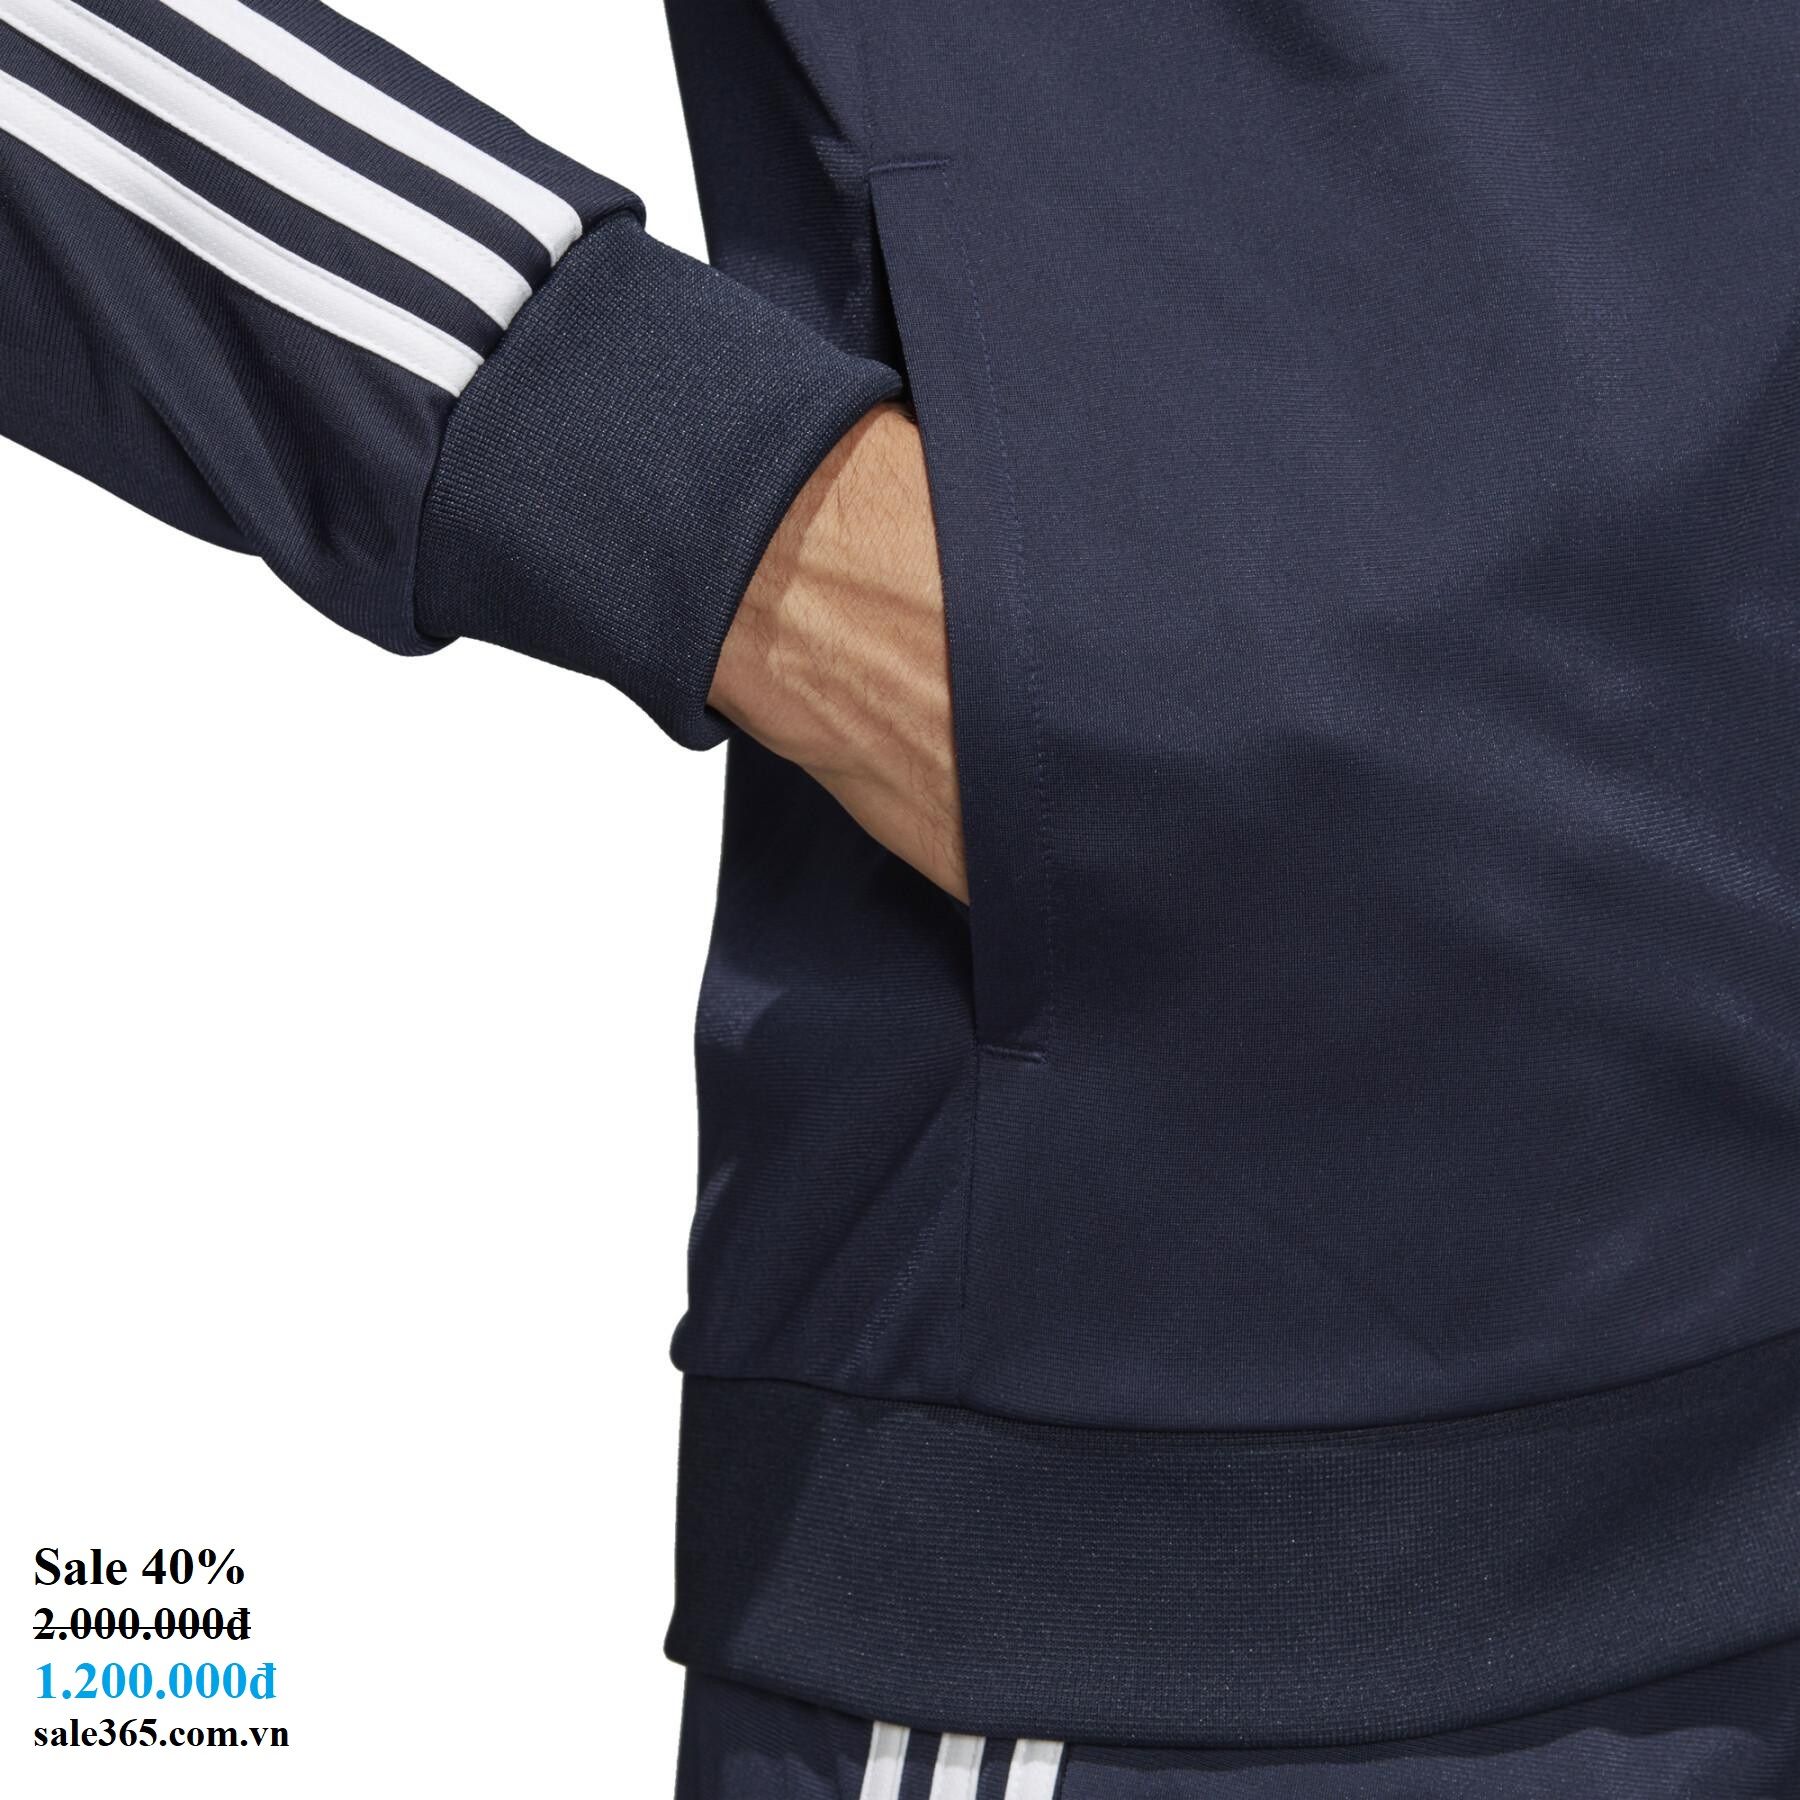 Chính hãng] Bộ thể thao nam Adidas 3-Stripes Track Blue - DV2468 – Sale 365